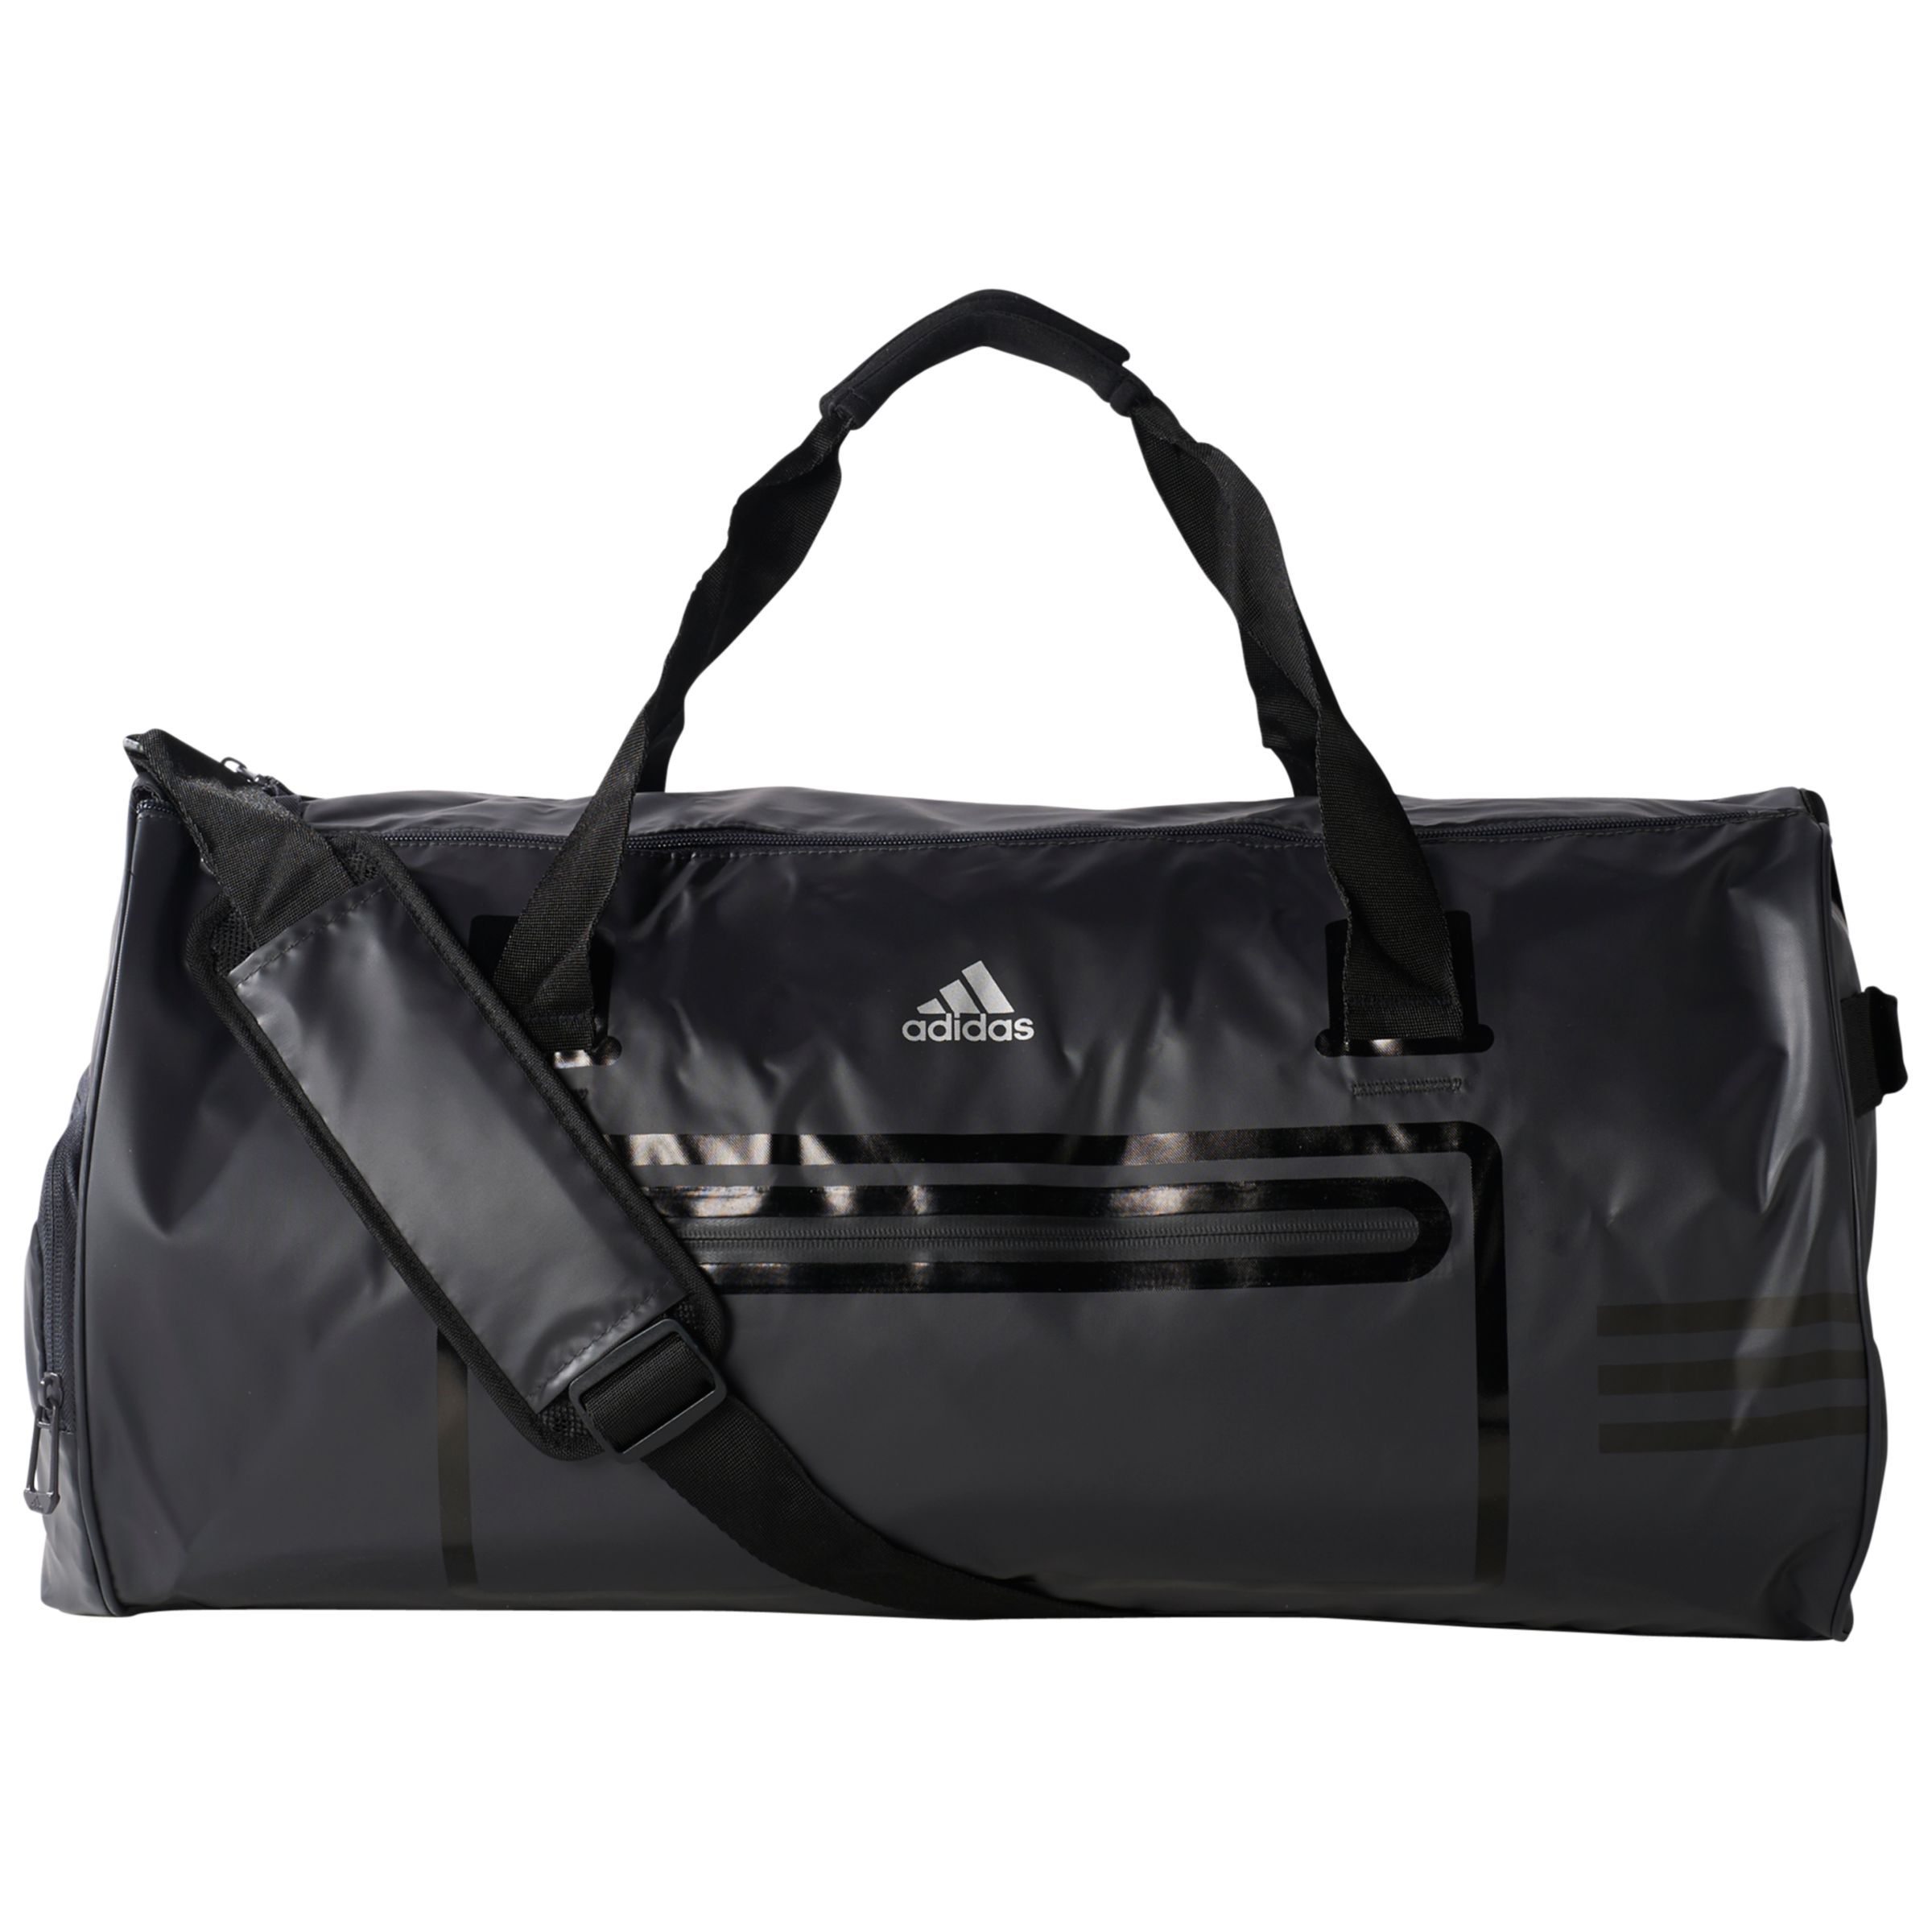 Adidas Climacool Team Bag, Black, Medium at John Lewis \u0026 Partners